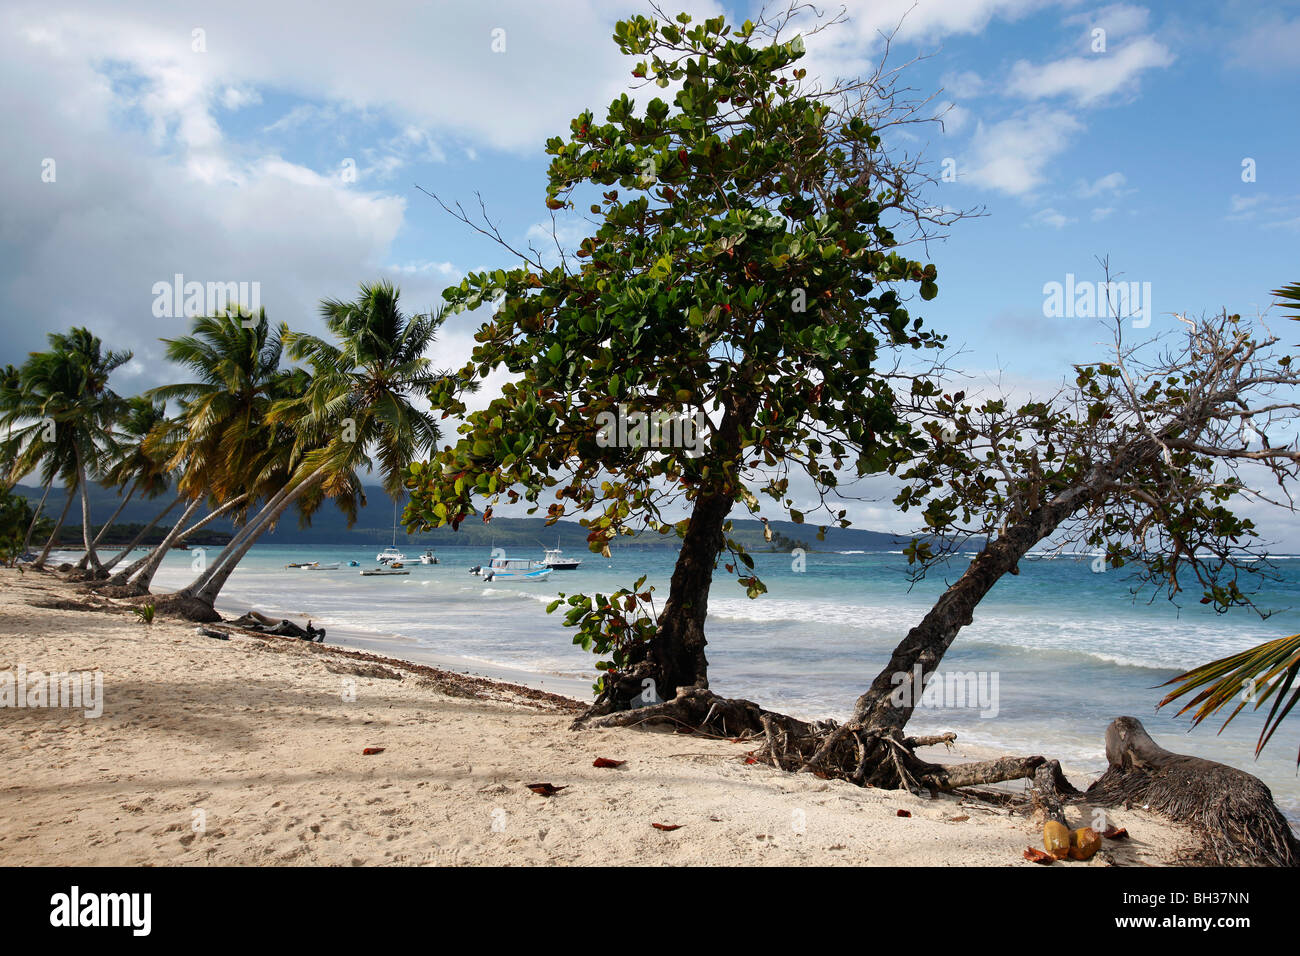 Las Galeras beach, Samana peninsula, Dominican Republic Stock Photo